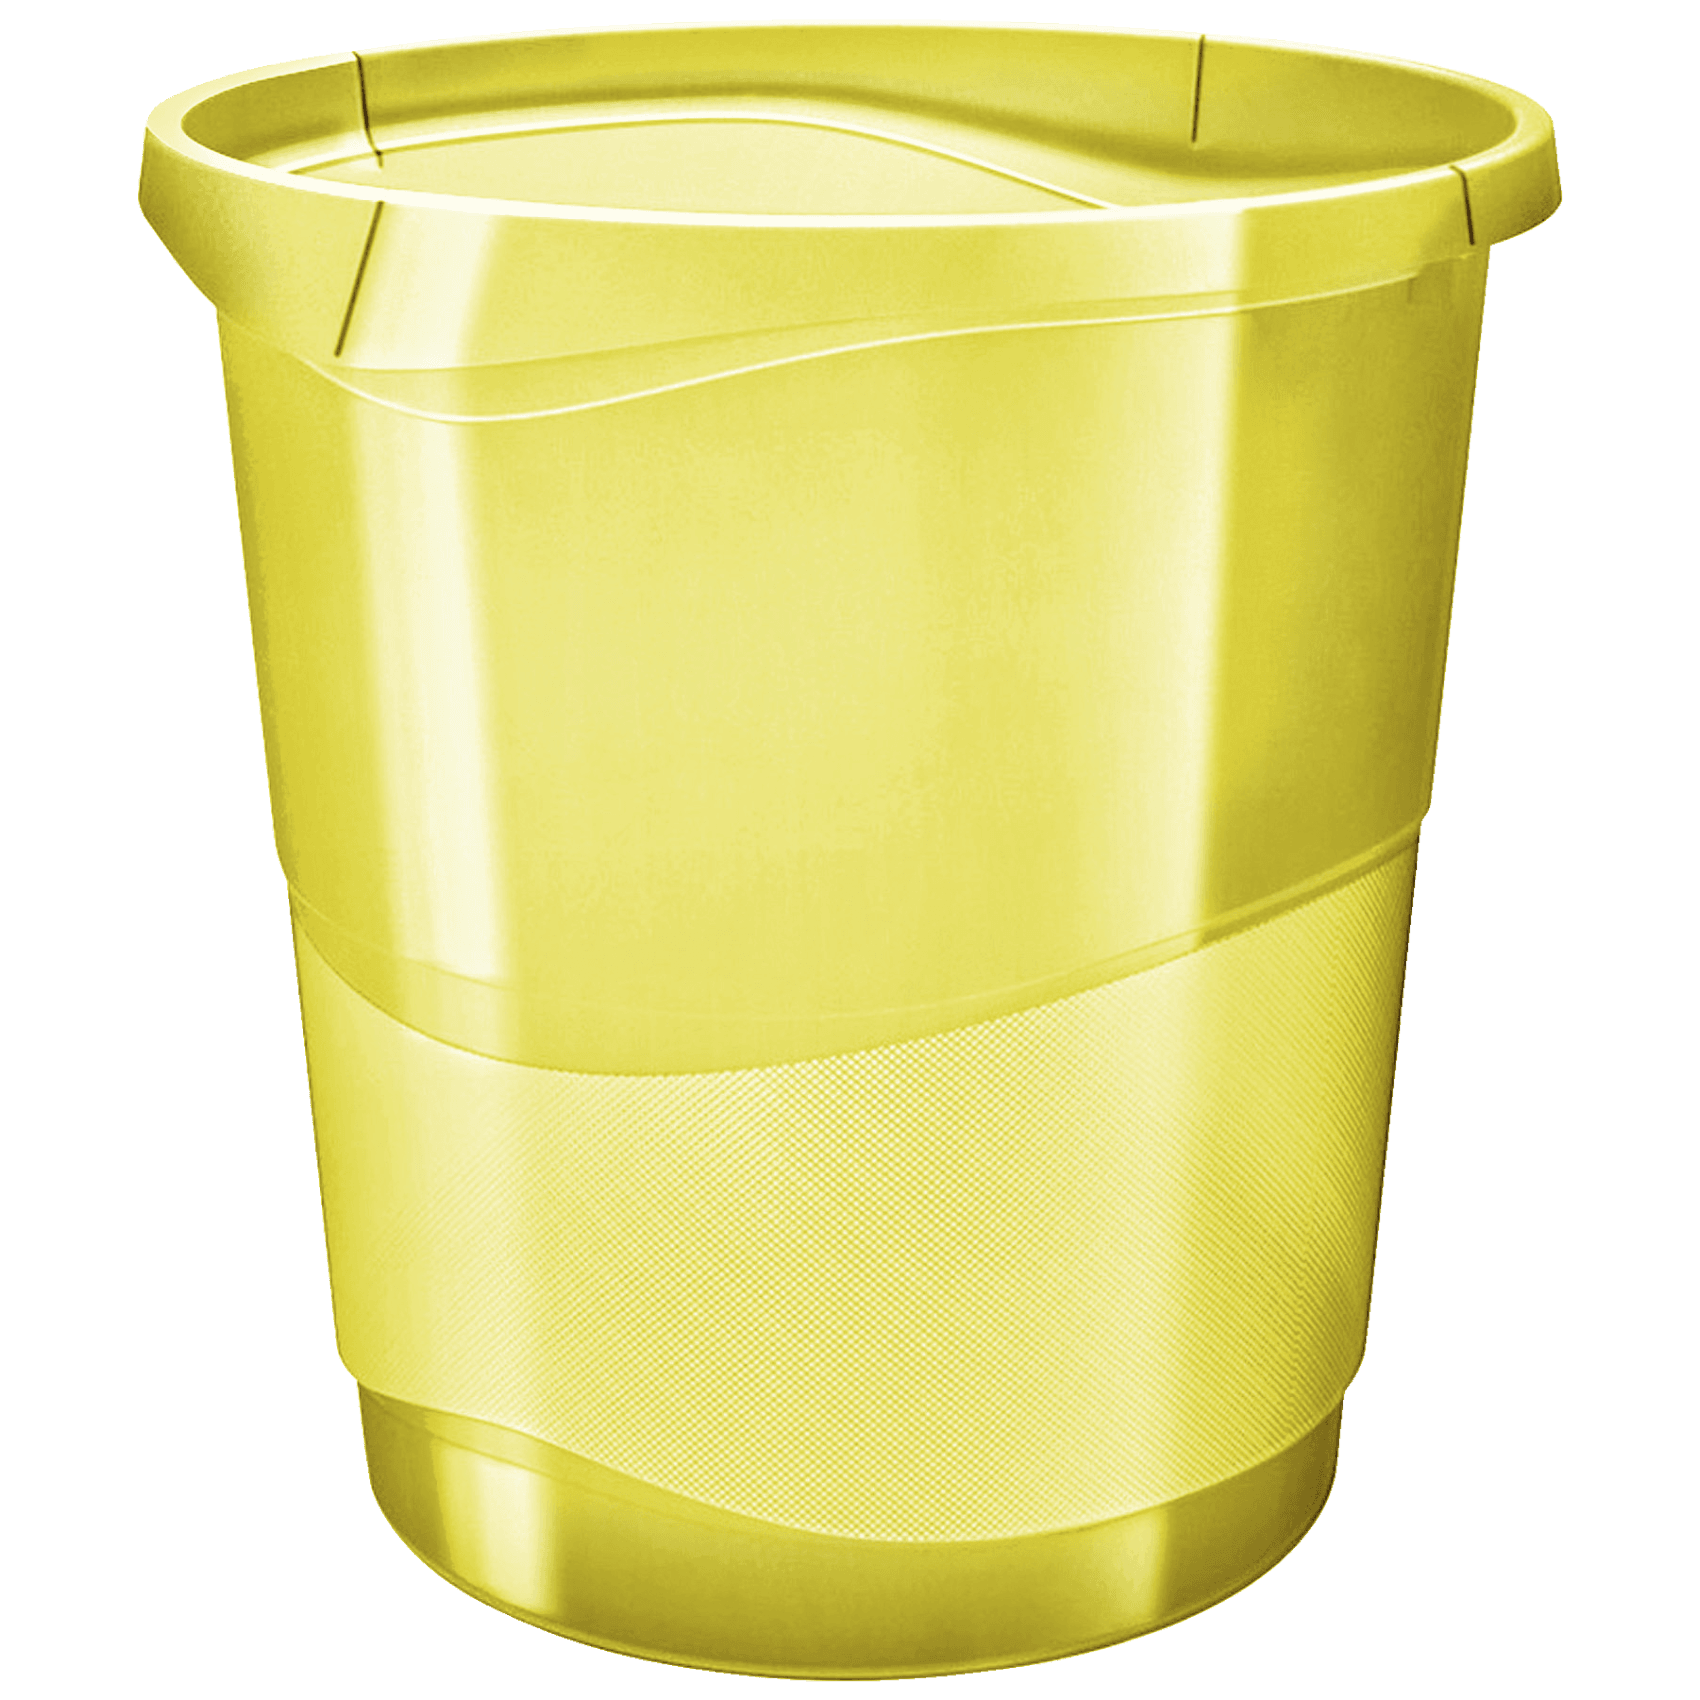 Odpadkový koš Esselte Colour'Ice, průhledná žlutá, 14 l